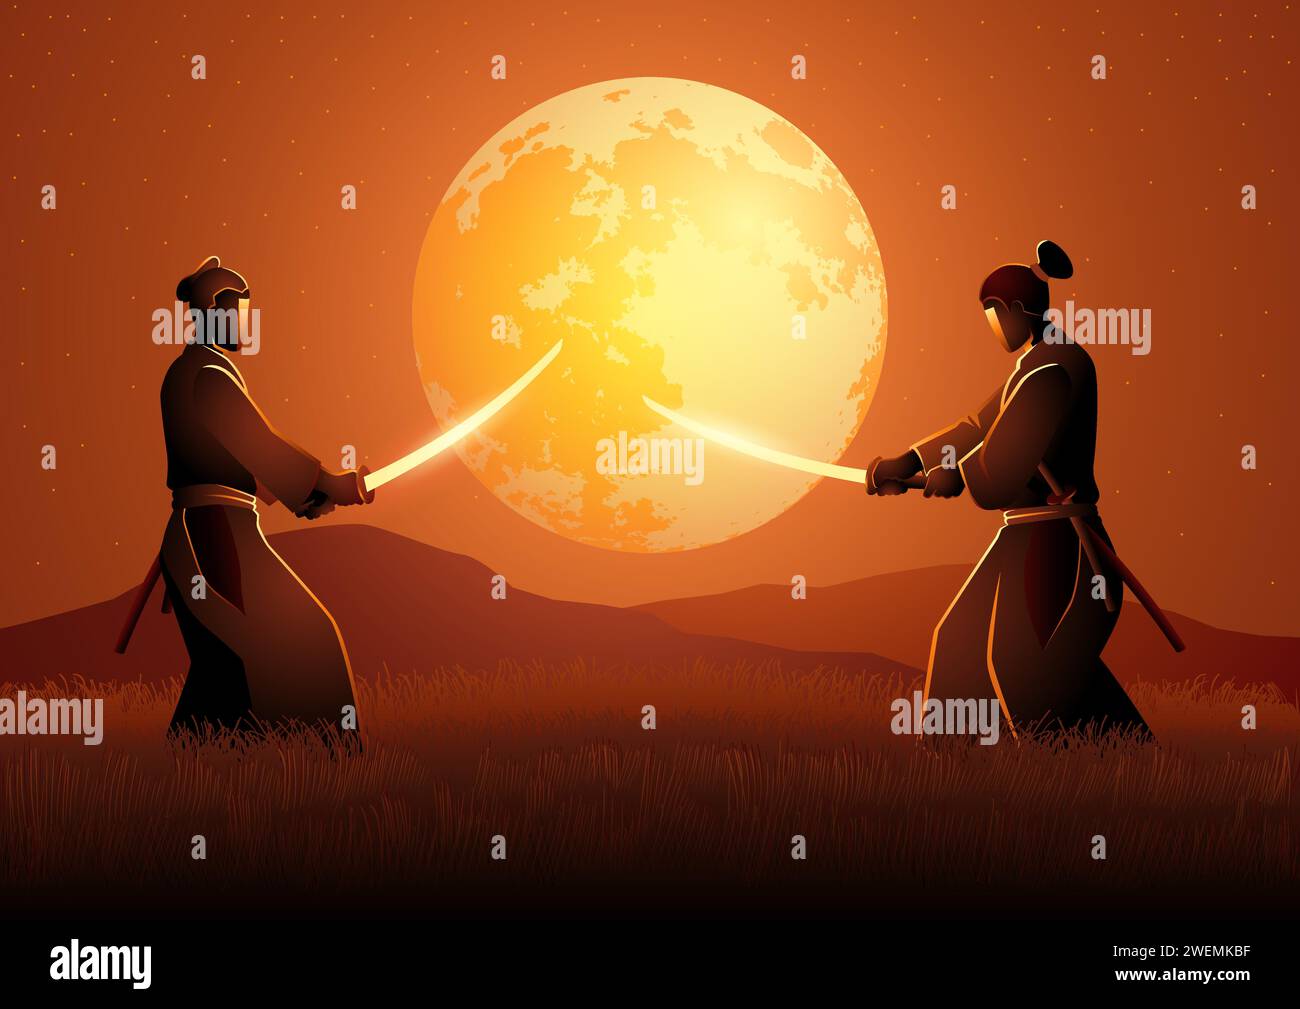 Illustrazione vettoriale di due Samurai in posizione duale l'uno di fronte all'altro su prato durante la luna piena Illustrazione Vettoriale